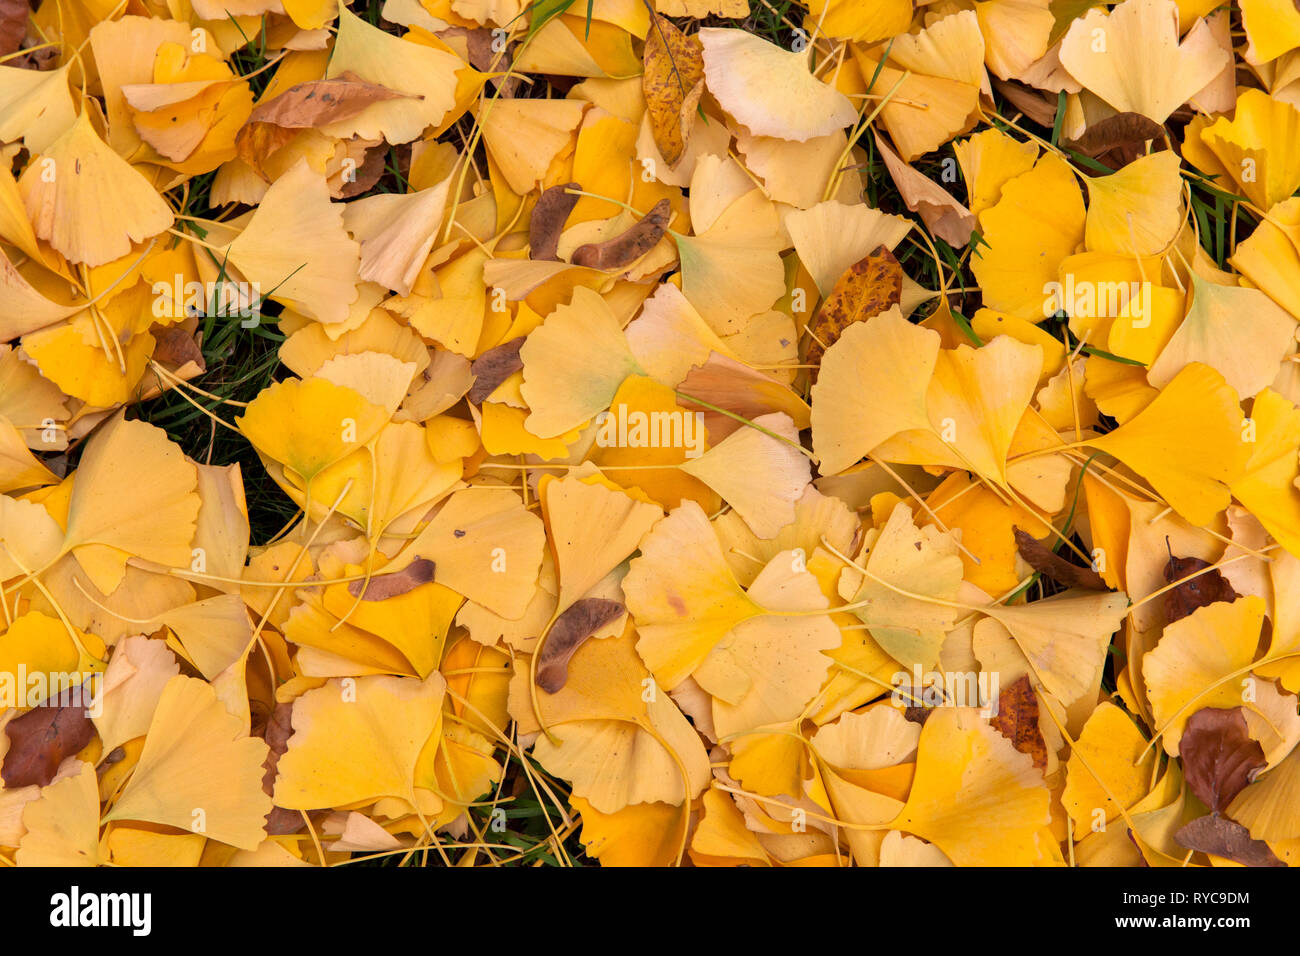 autumn foliage of Ginkgo trees, Germany.  Herbstlaub von Ginkgo Baeumen, Deutschland. Stock Photo